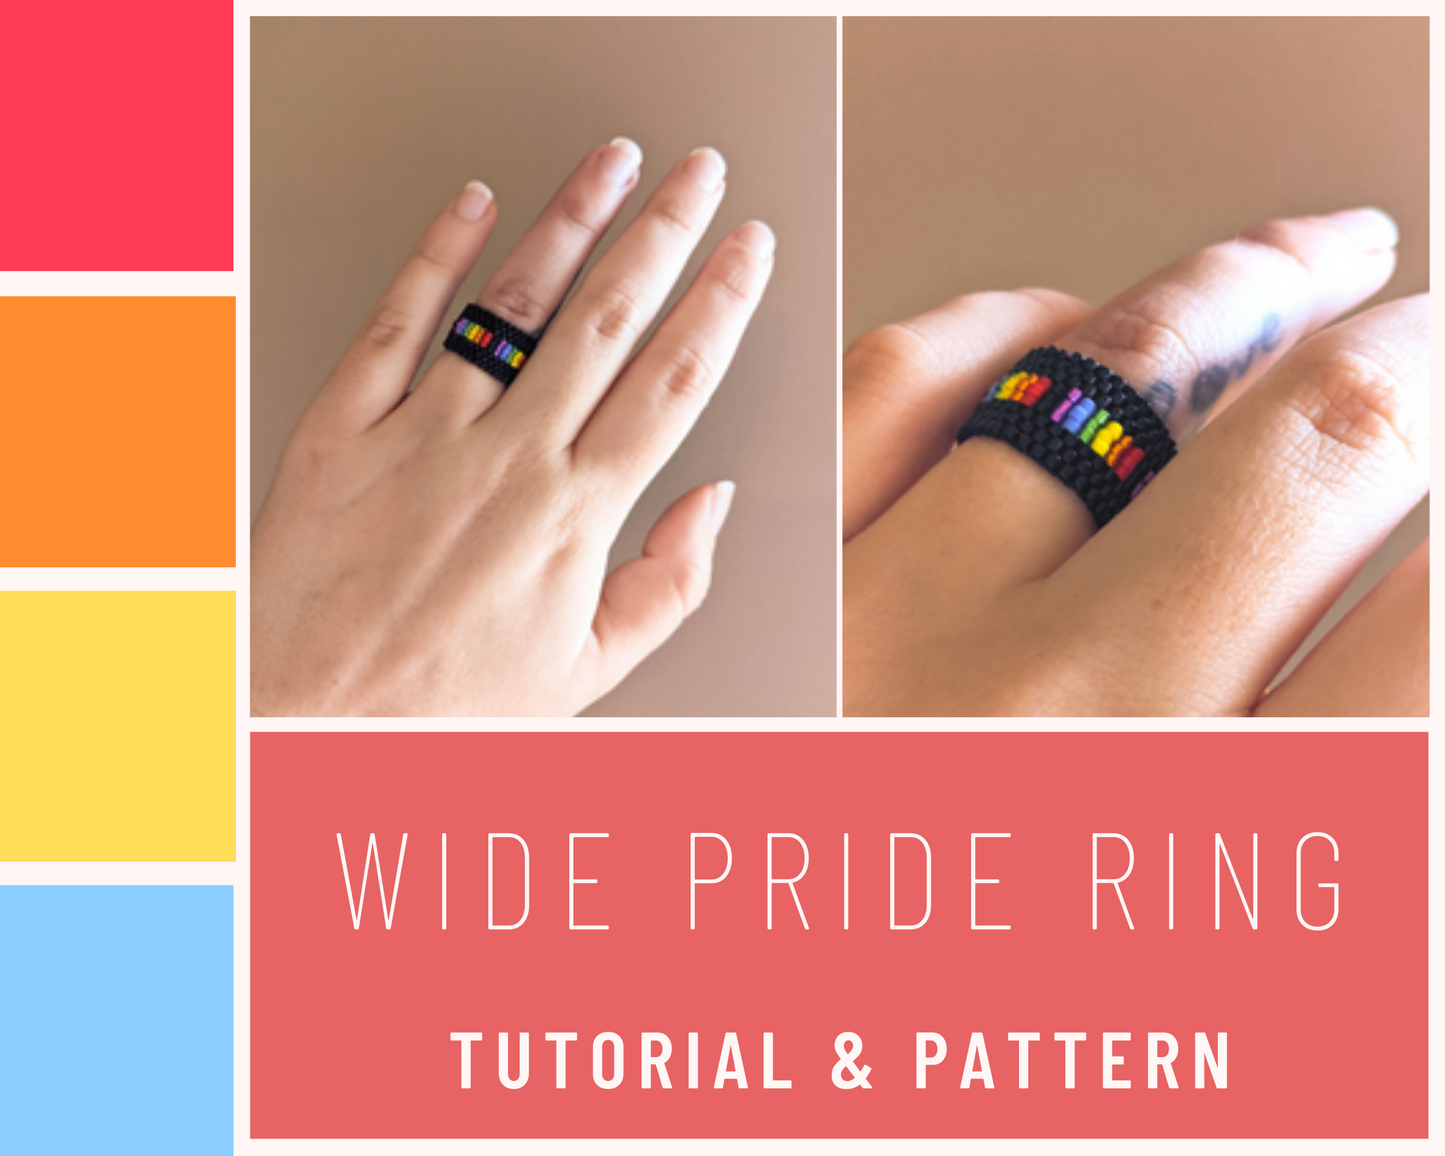 Wide Pride Ring - Tutorial